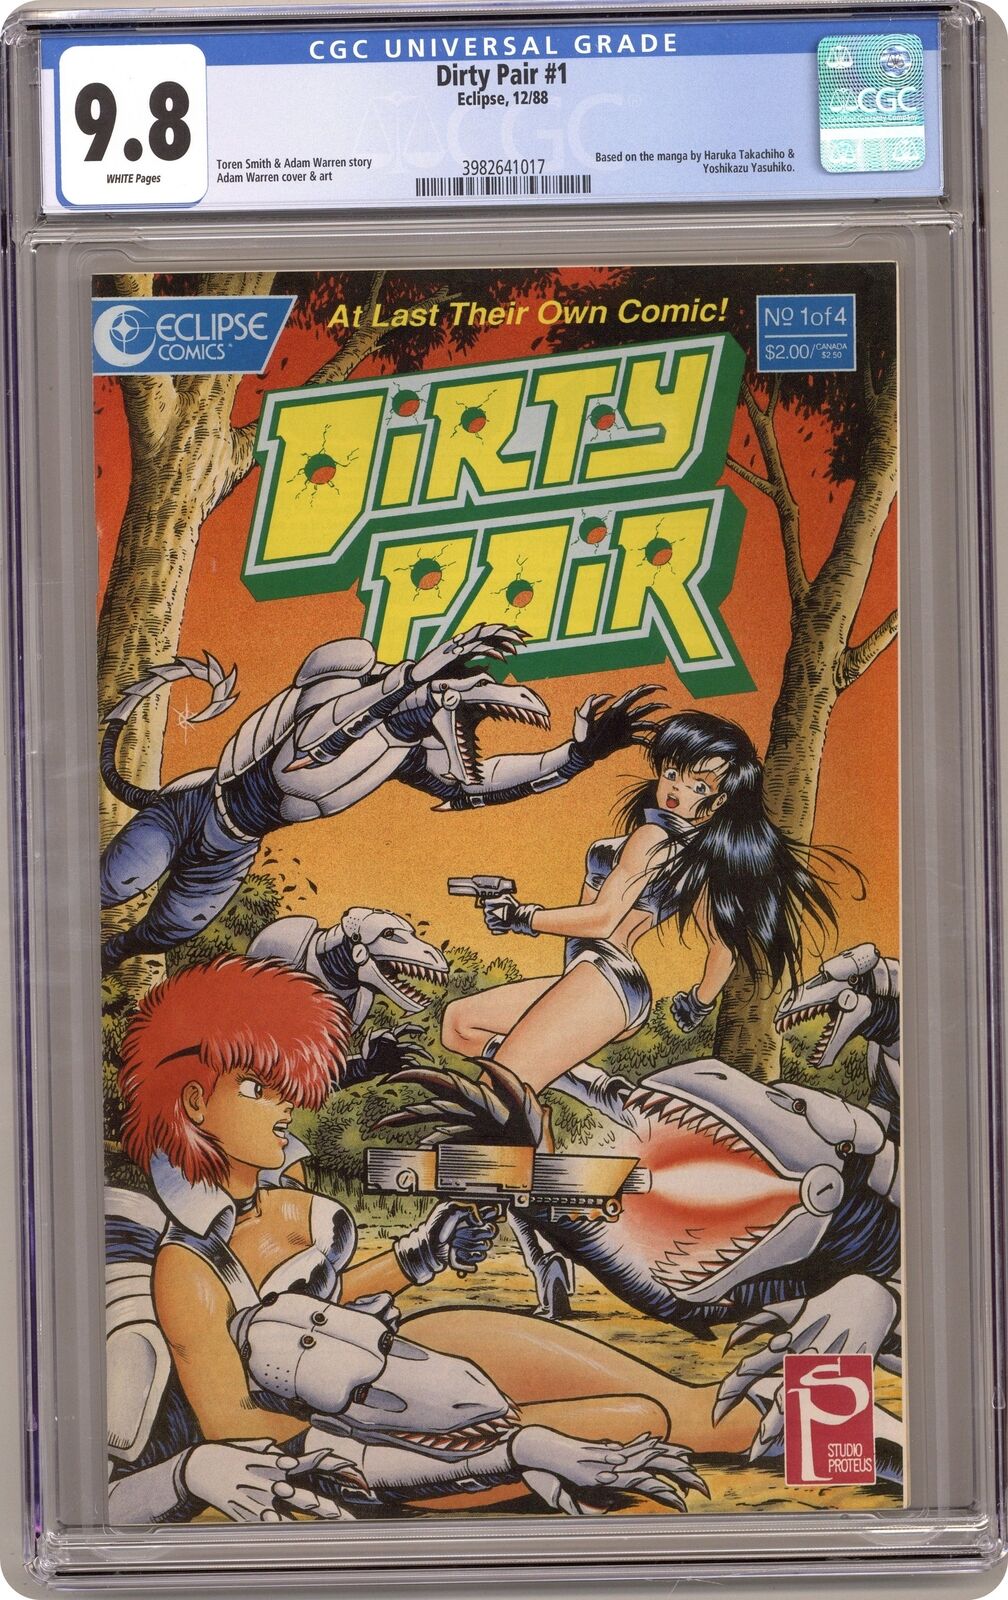 Dirty Pair #1 CGC 9.8 1988 3982641017